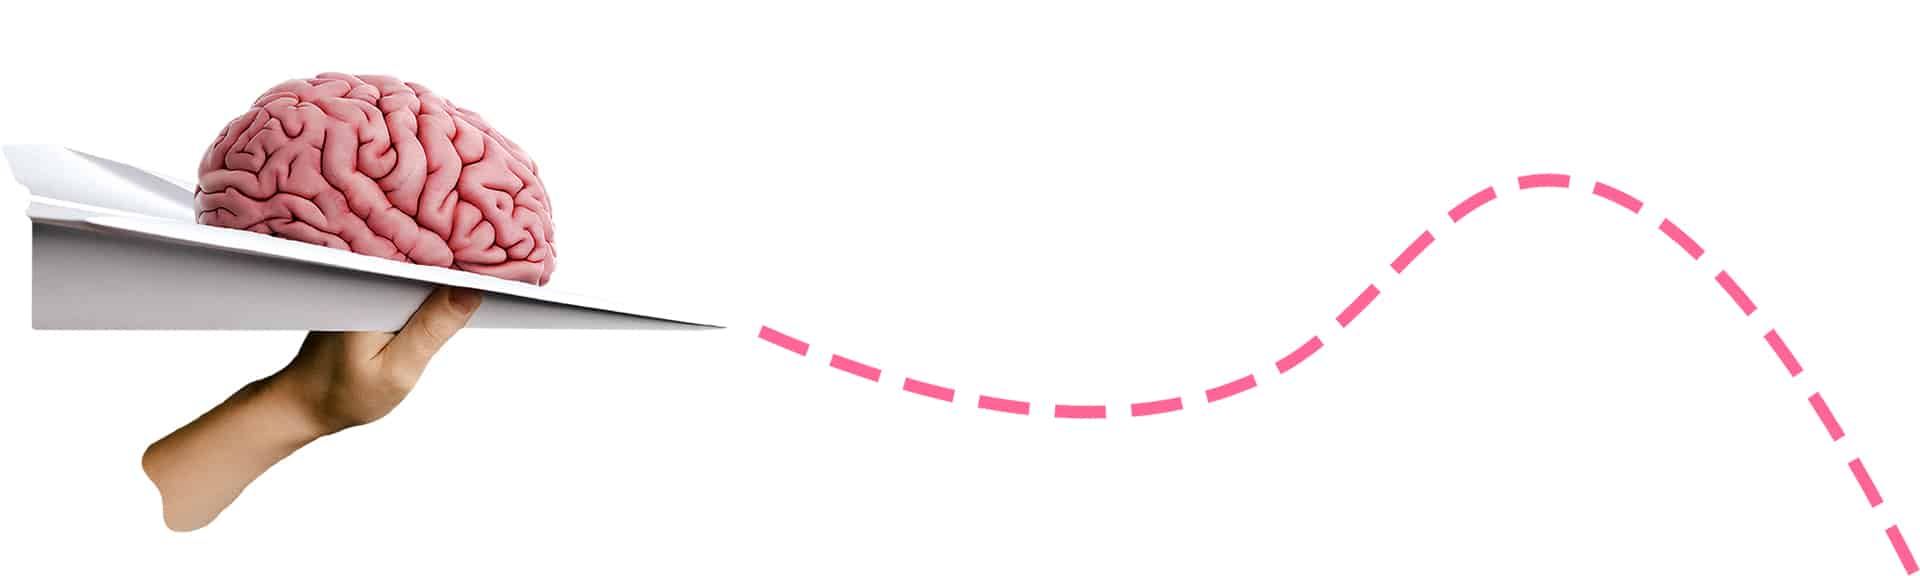 Ett kollage med ett pappersflygplan, en hjärna och en streckad rosa linje